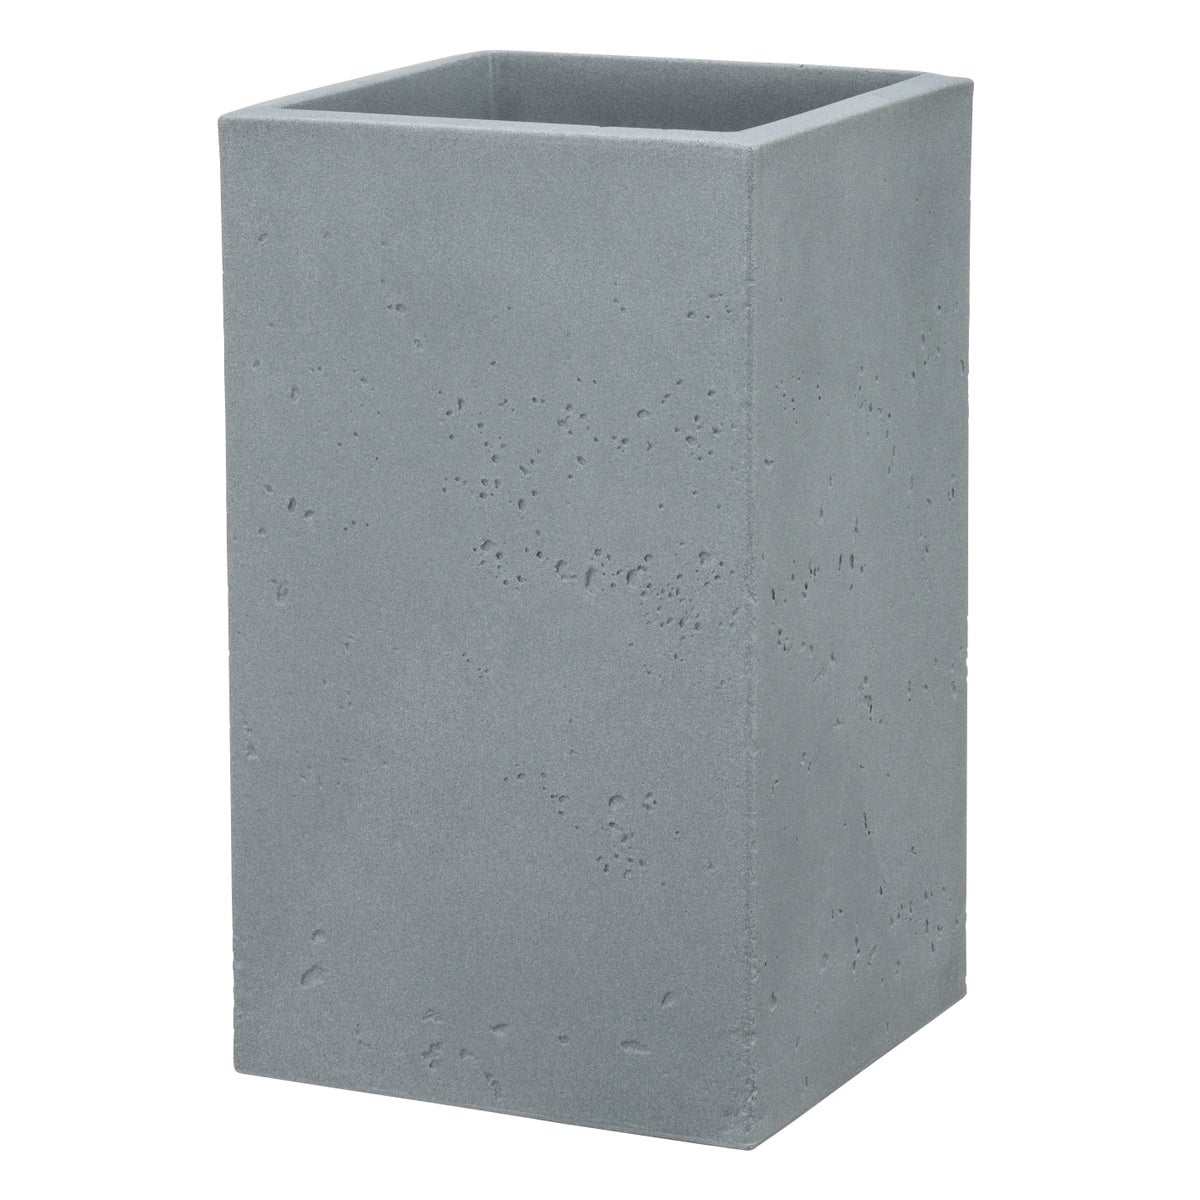 Scheurich C-Cube High 48, Hochgefäß/Blumentopf/Pflanzkübel, quadratisch,  aus Kunststoff Farbe: Stony Grey, 28 cm Durchmesser, 47,7 cm hoch, 11 l Vol.